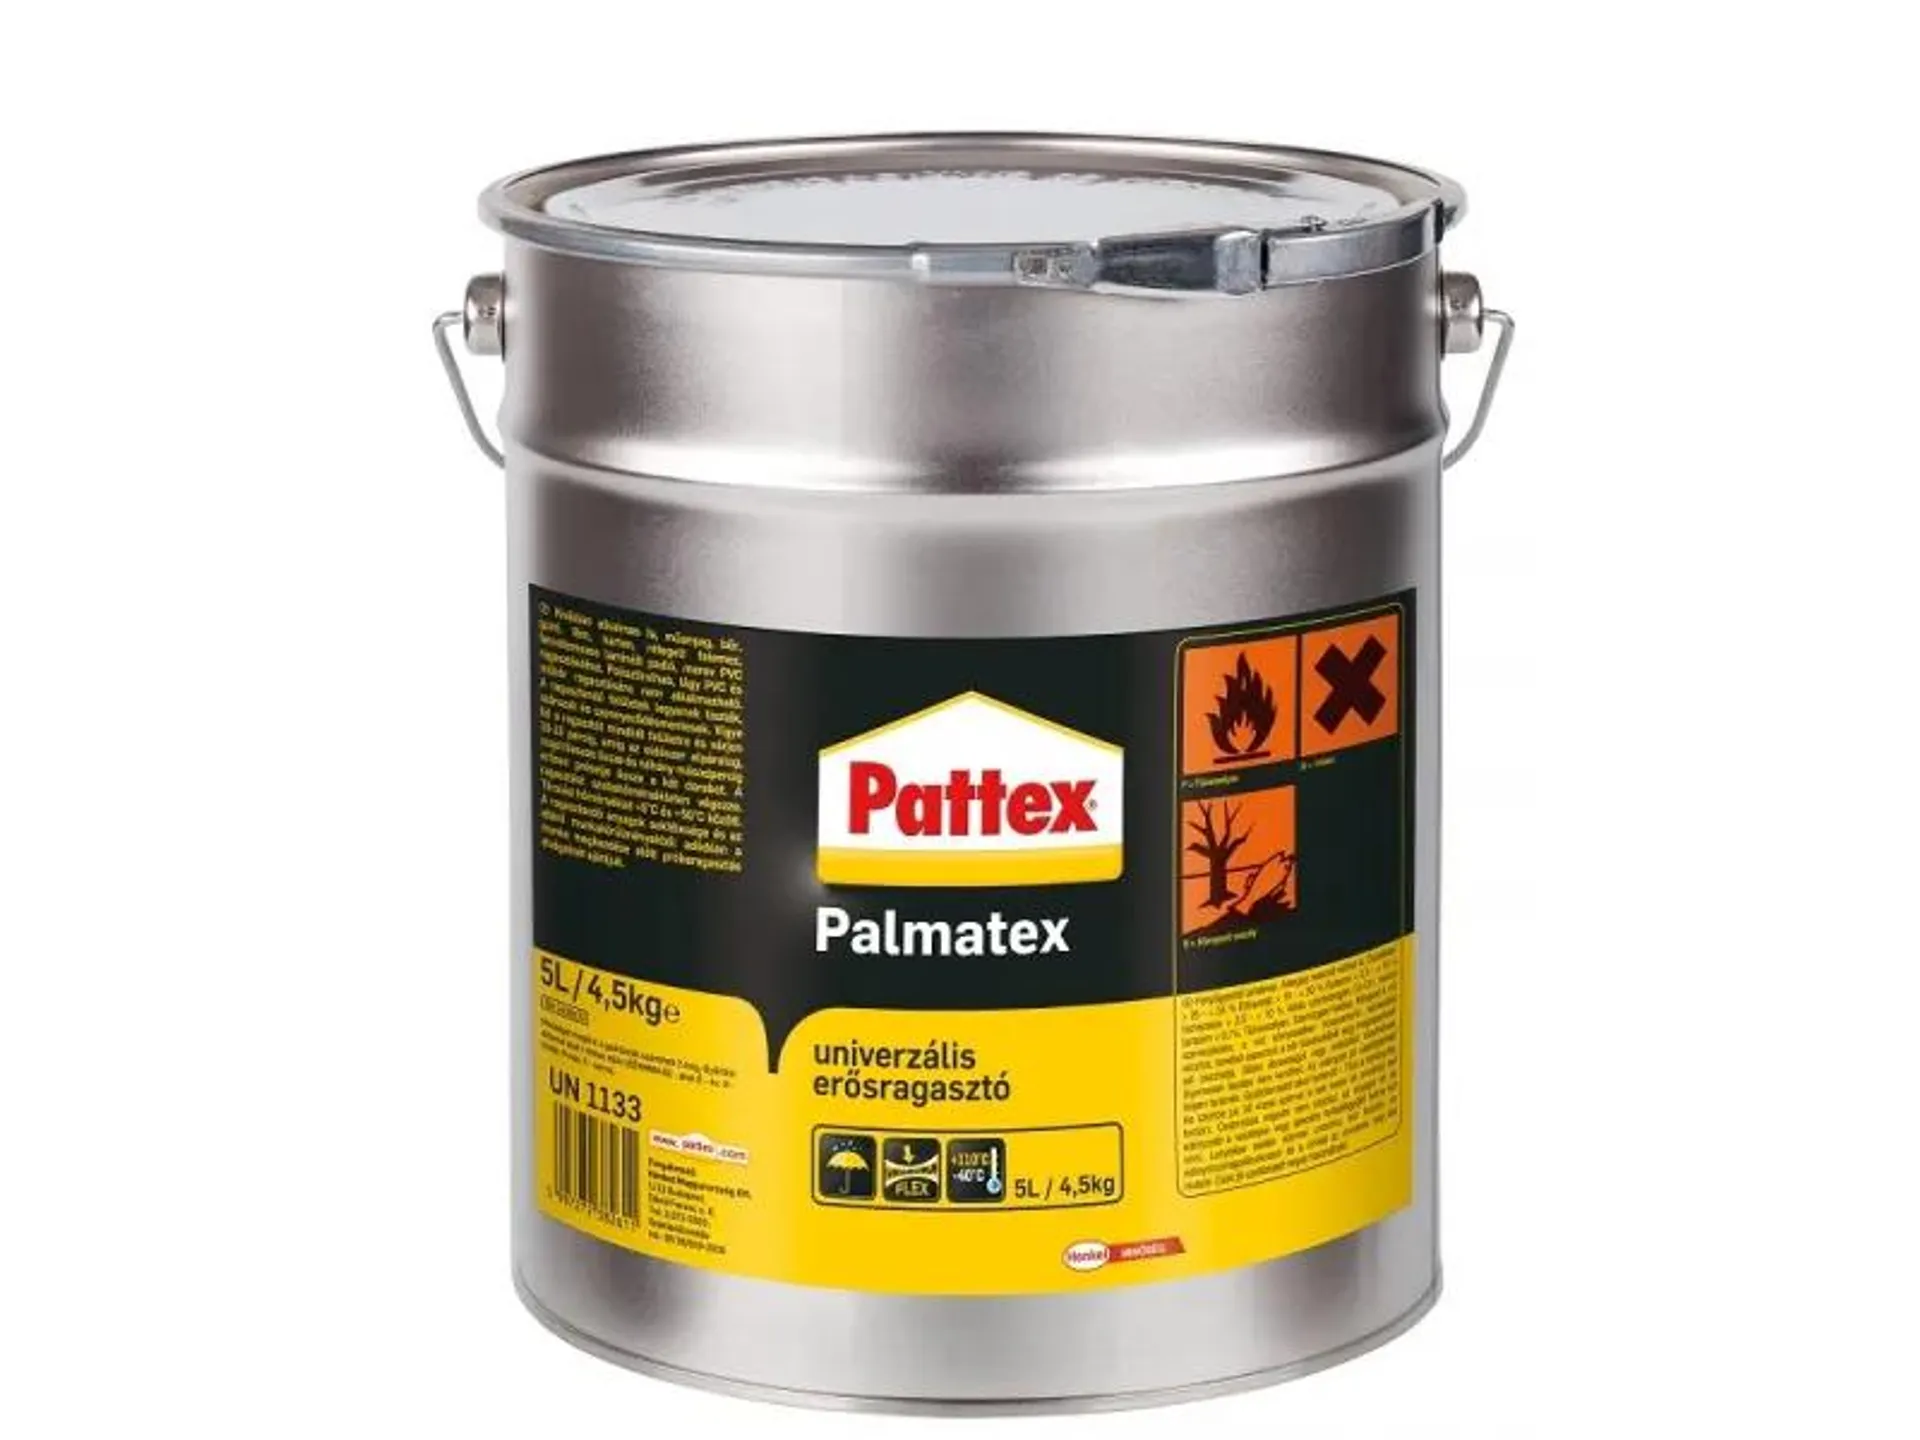 PATTEX PALMATEX - univerzális erősragasztó (5L)